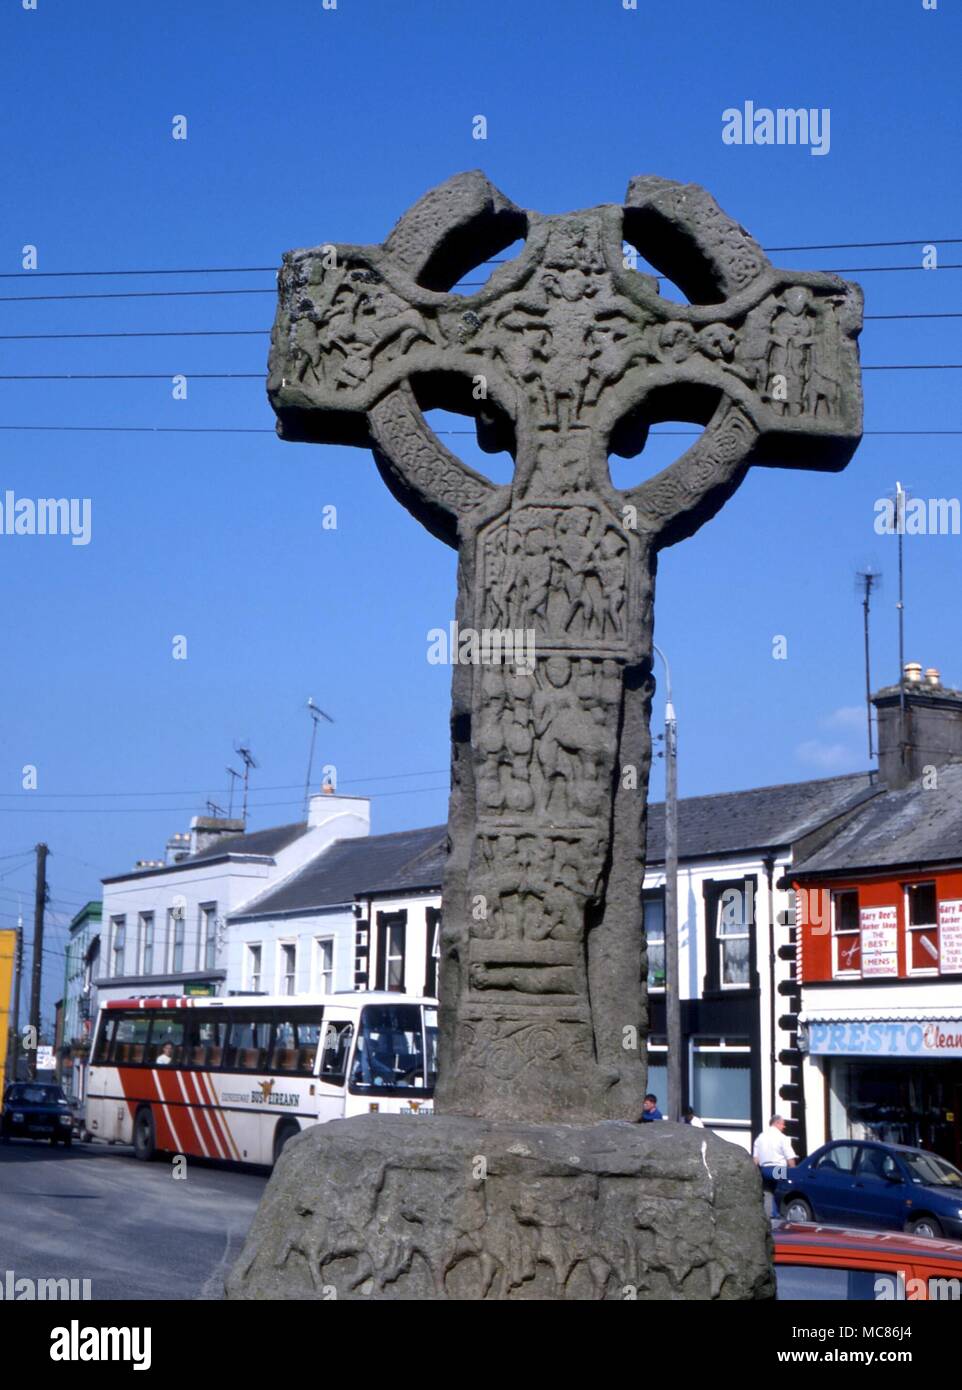 La croix celtique "marché" dans le centre de Kells, comté de Meath, en Irlande. Probablement 9e ou 10e siècle. L'imagerie est centrale de la Crucifixion Banque D'Images